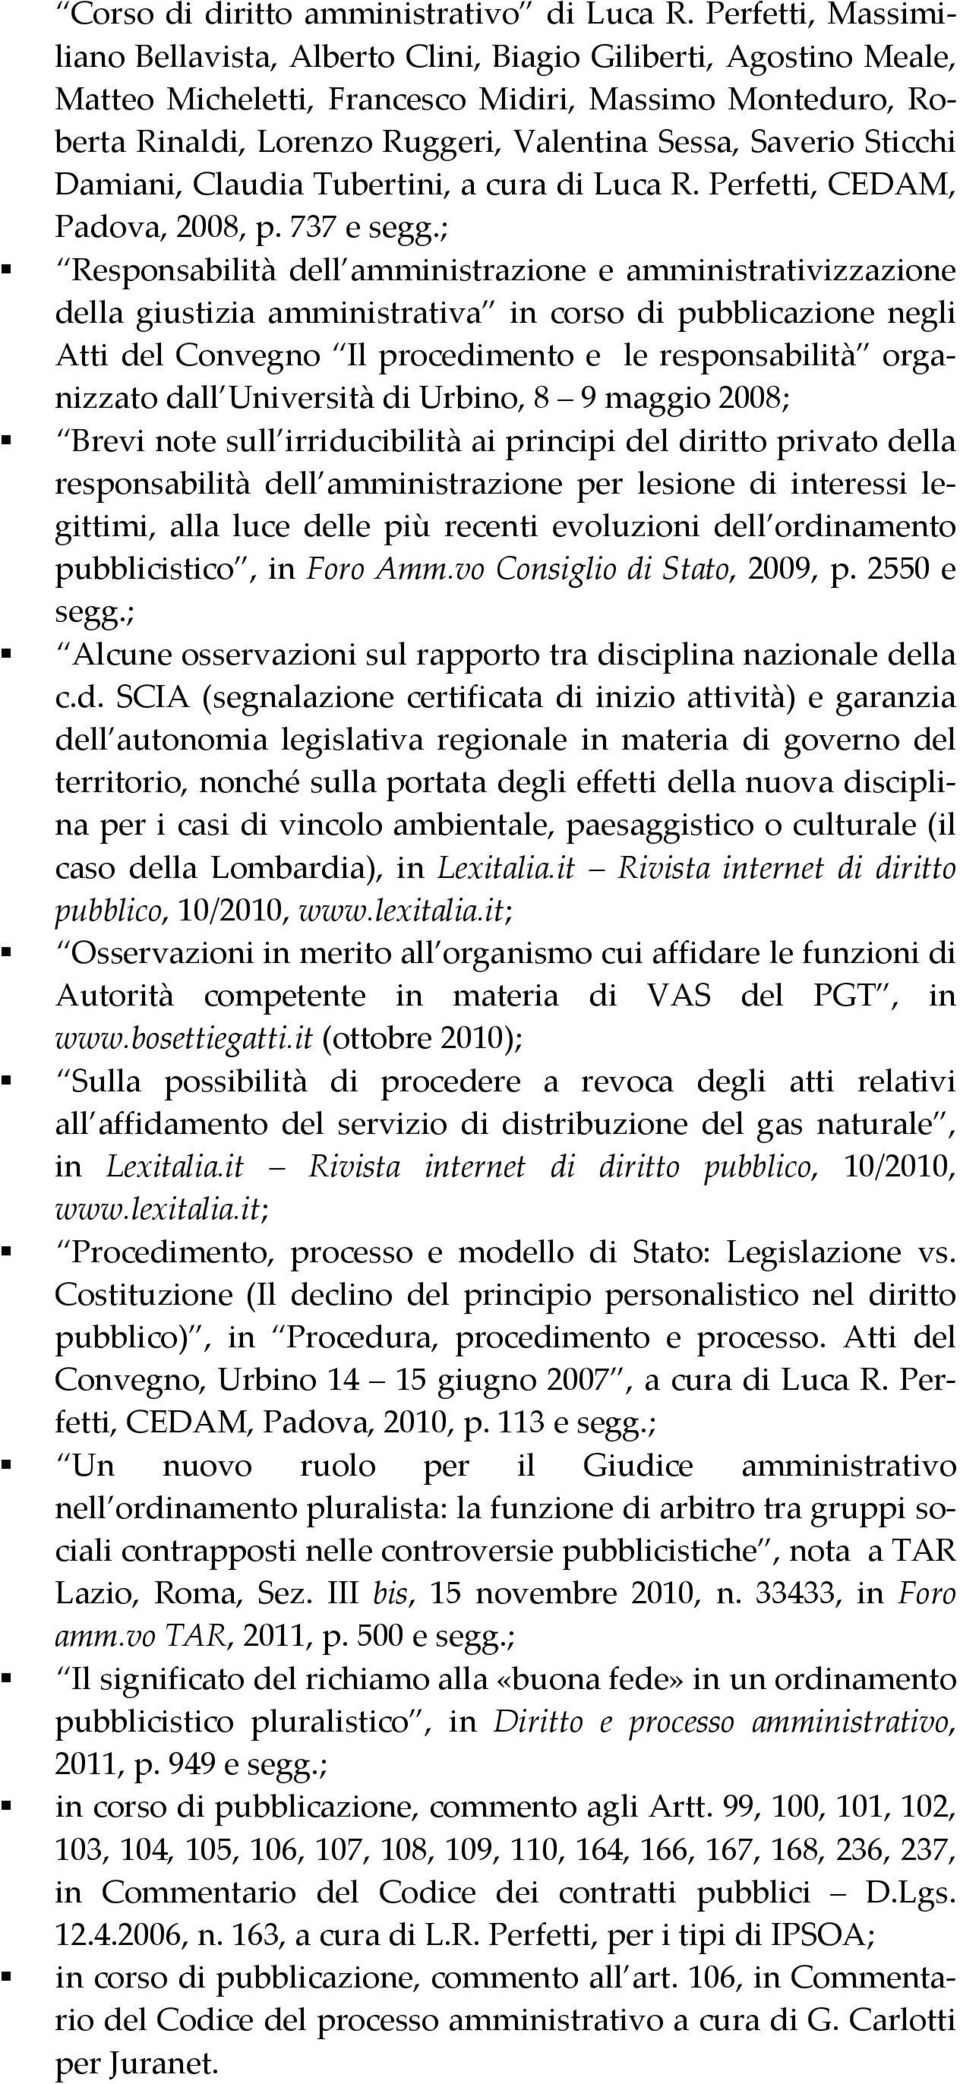 Sticchi Damiani, Claudia Tubertini, a cura di Luca R. Perfetti, CEDAM, Padova, 2008, p. 737 e segg.